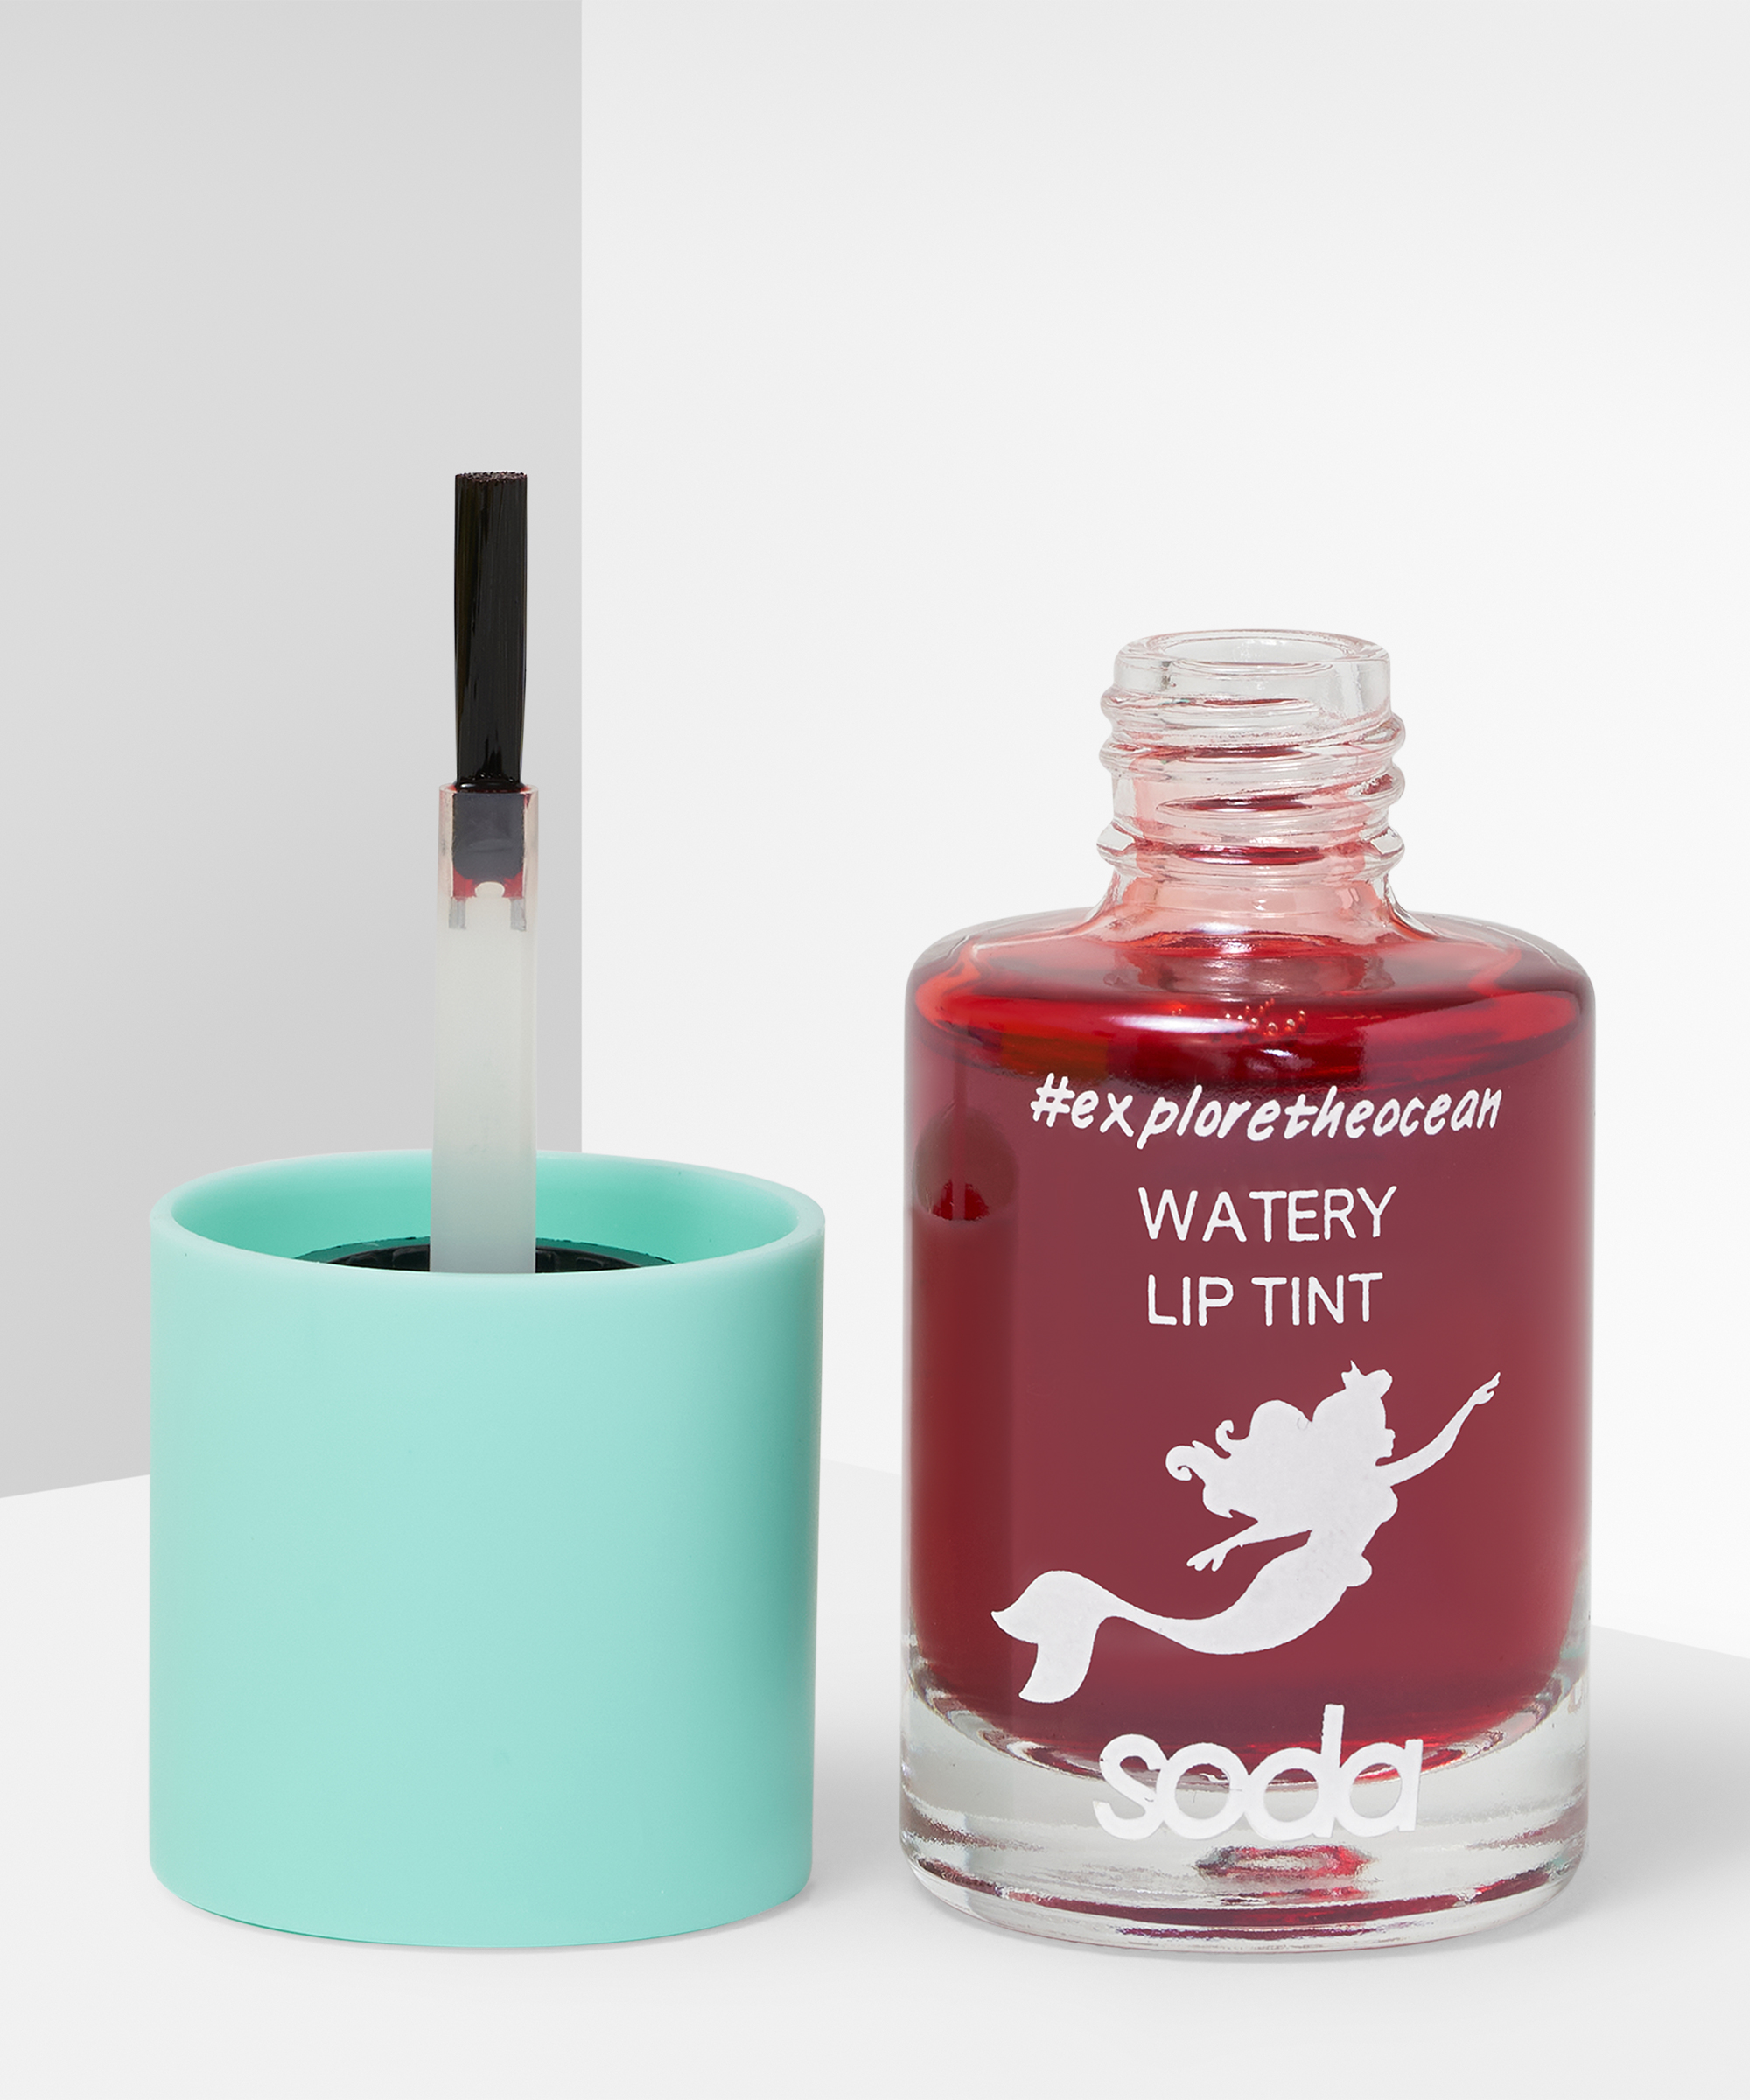 Soda #exploretheocean Lip Tint at BEAUTY BAY